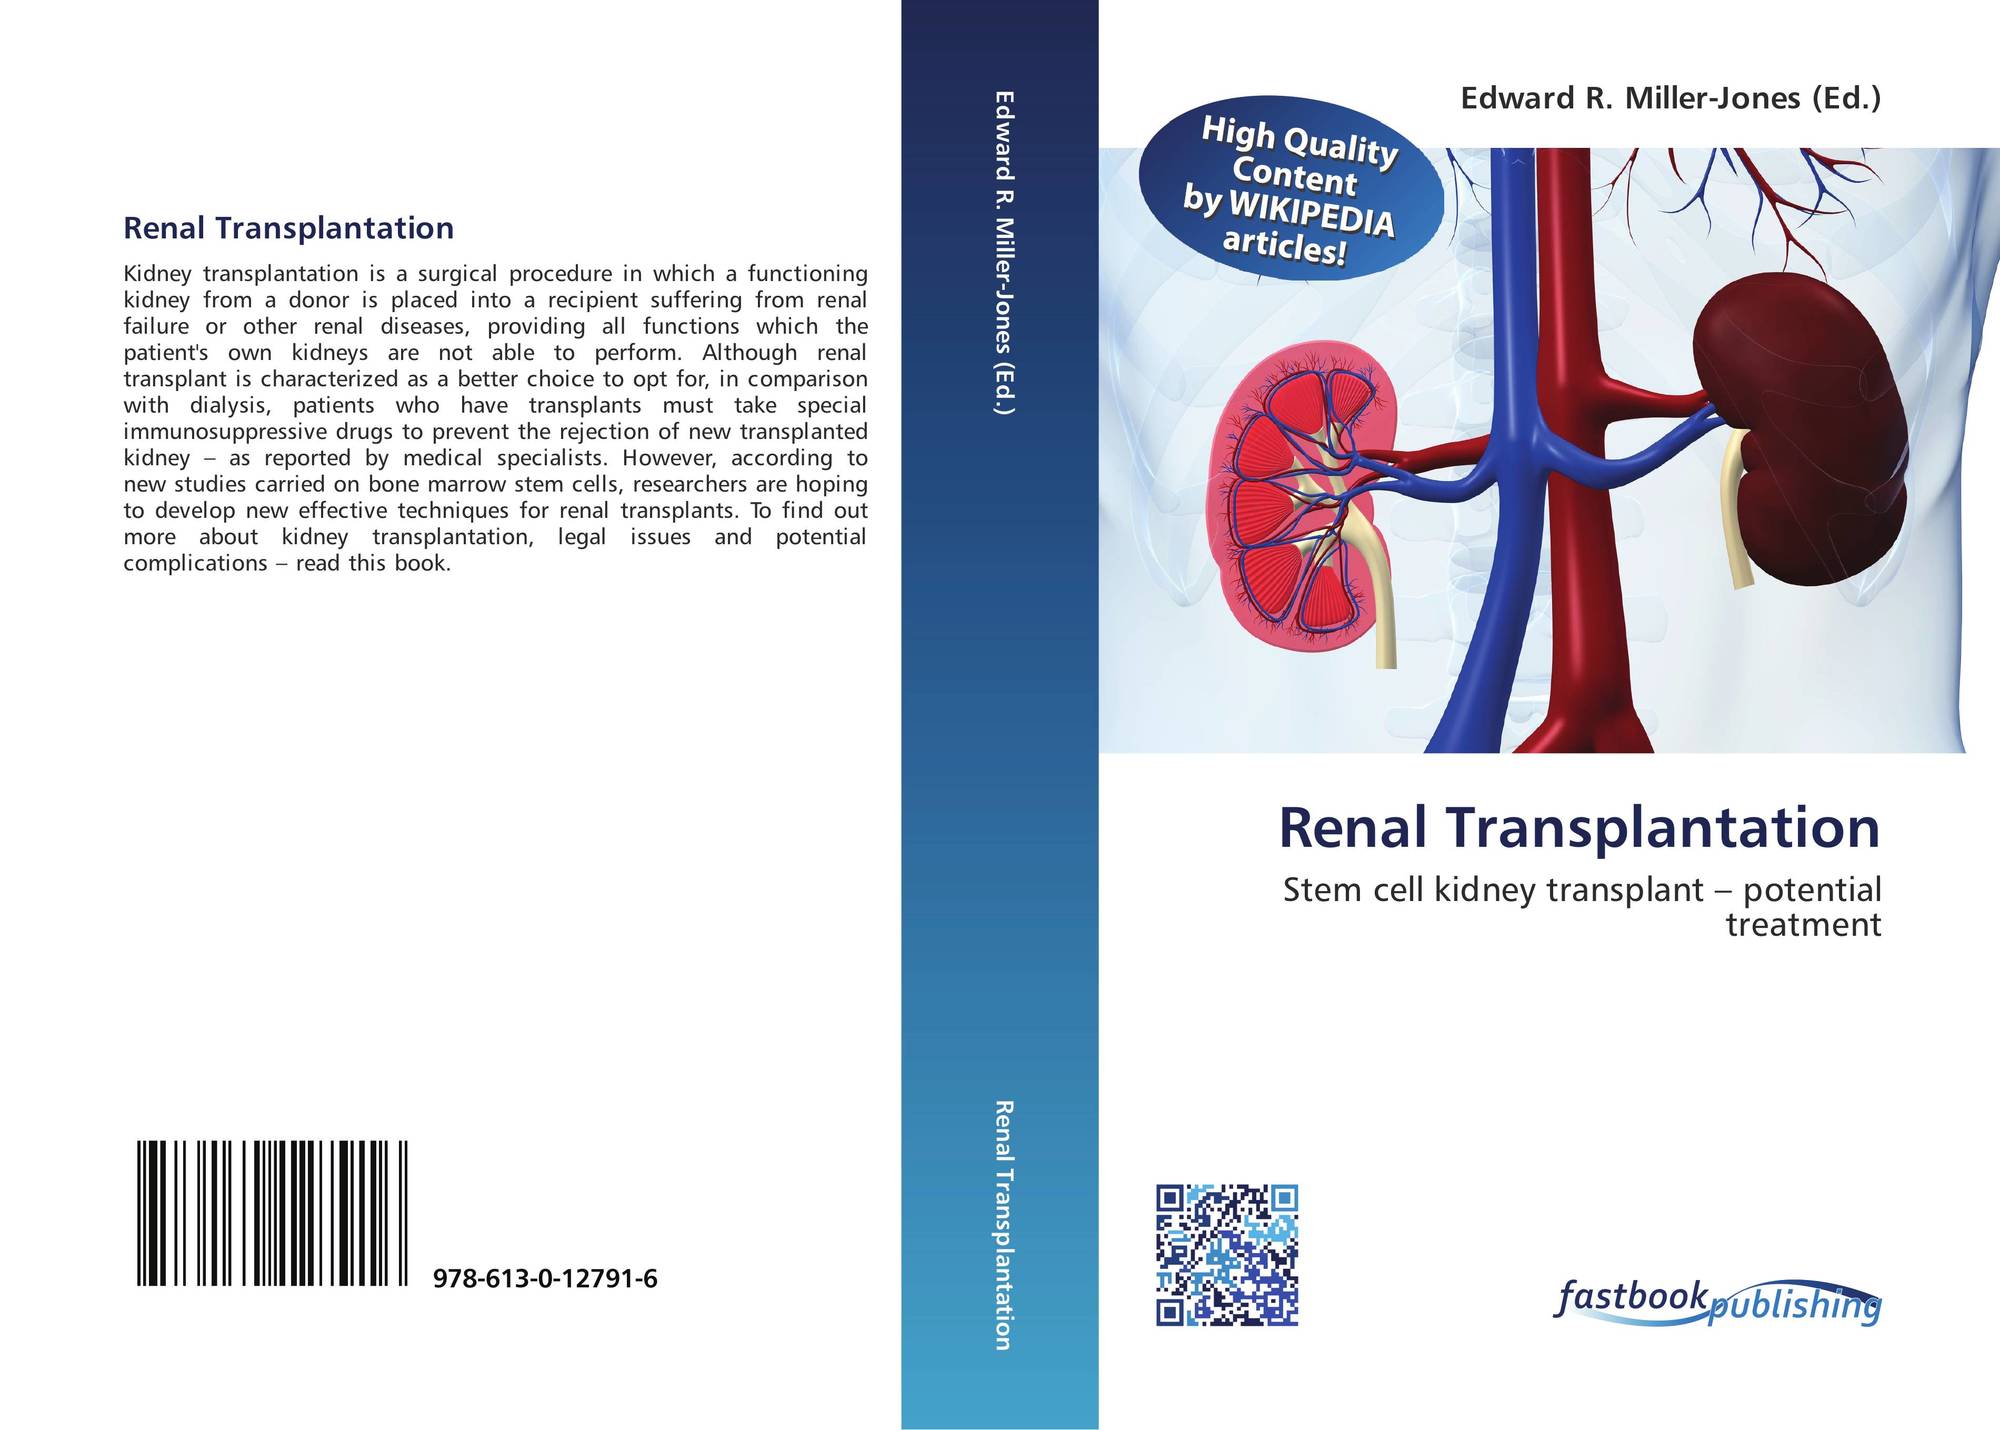 Renal Transplantation, 220 220 20 20 20, 2202020X ,220220202020